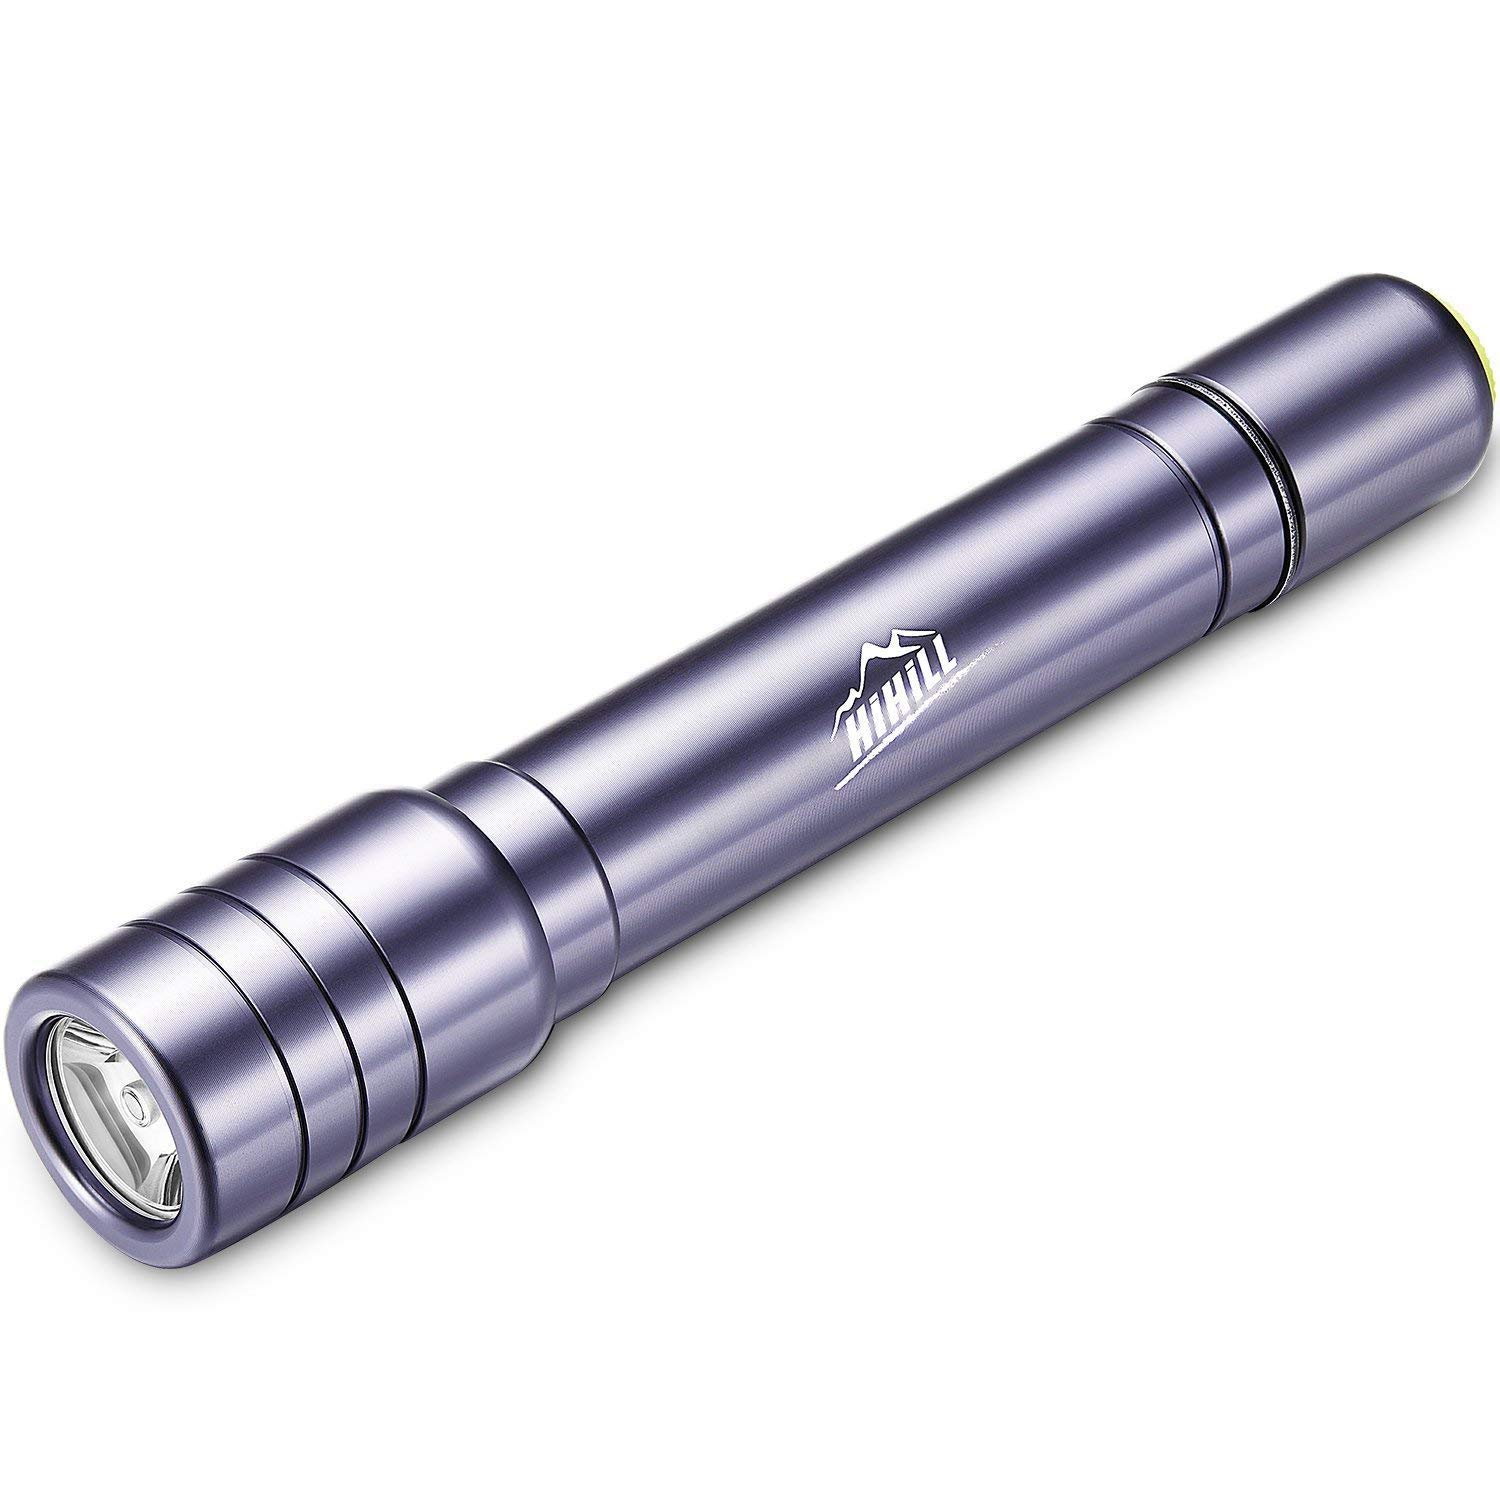 Linterna LED Ultra brillante con antorcha resistente al agua, para acampar, ir de excursión, o emergencia